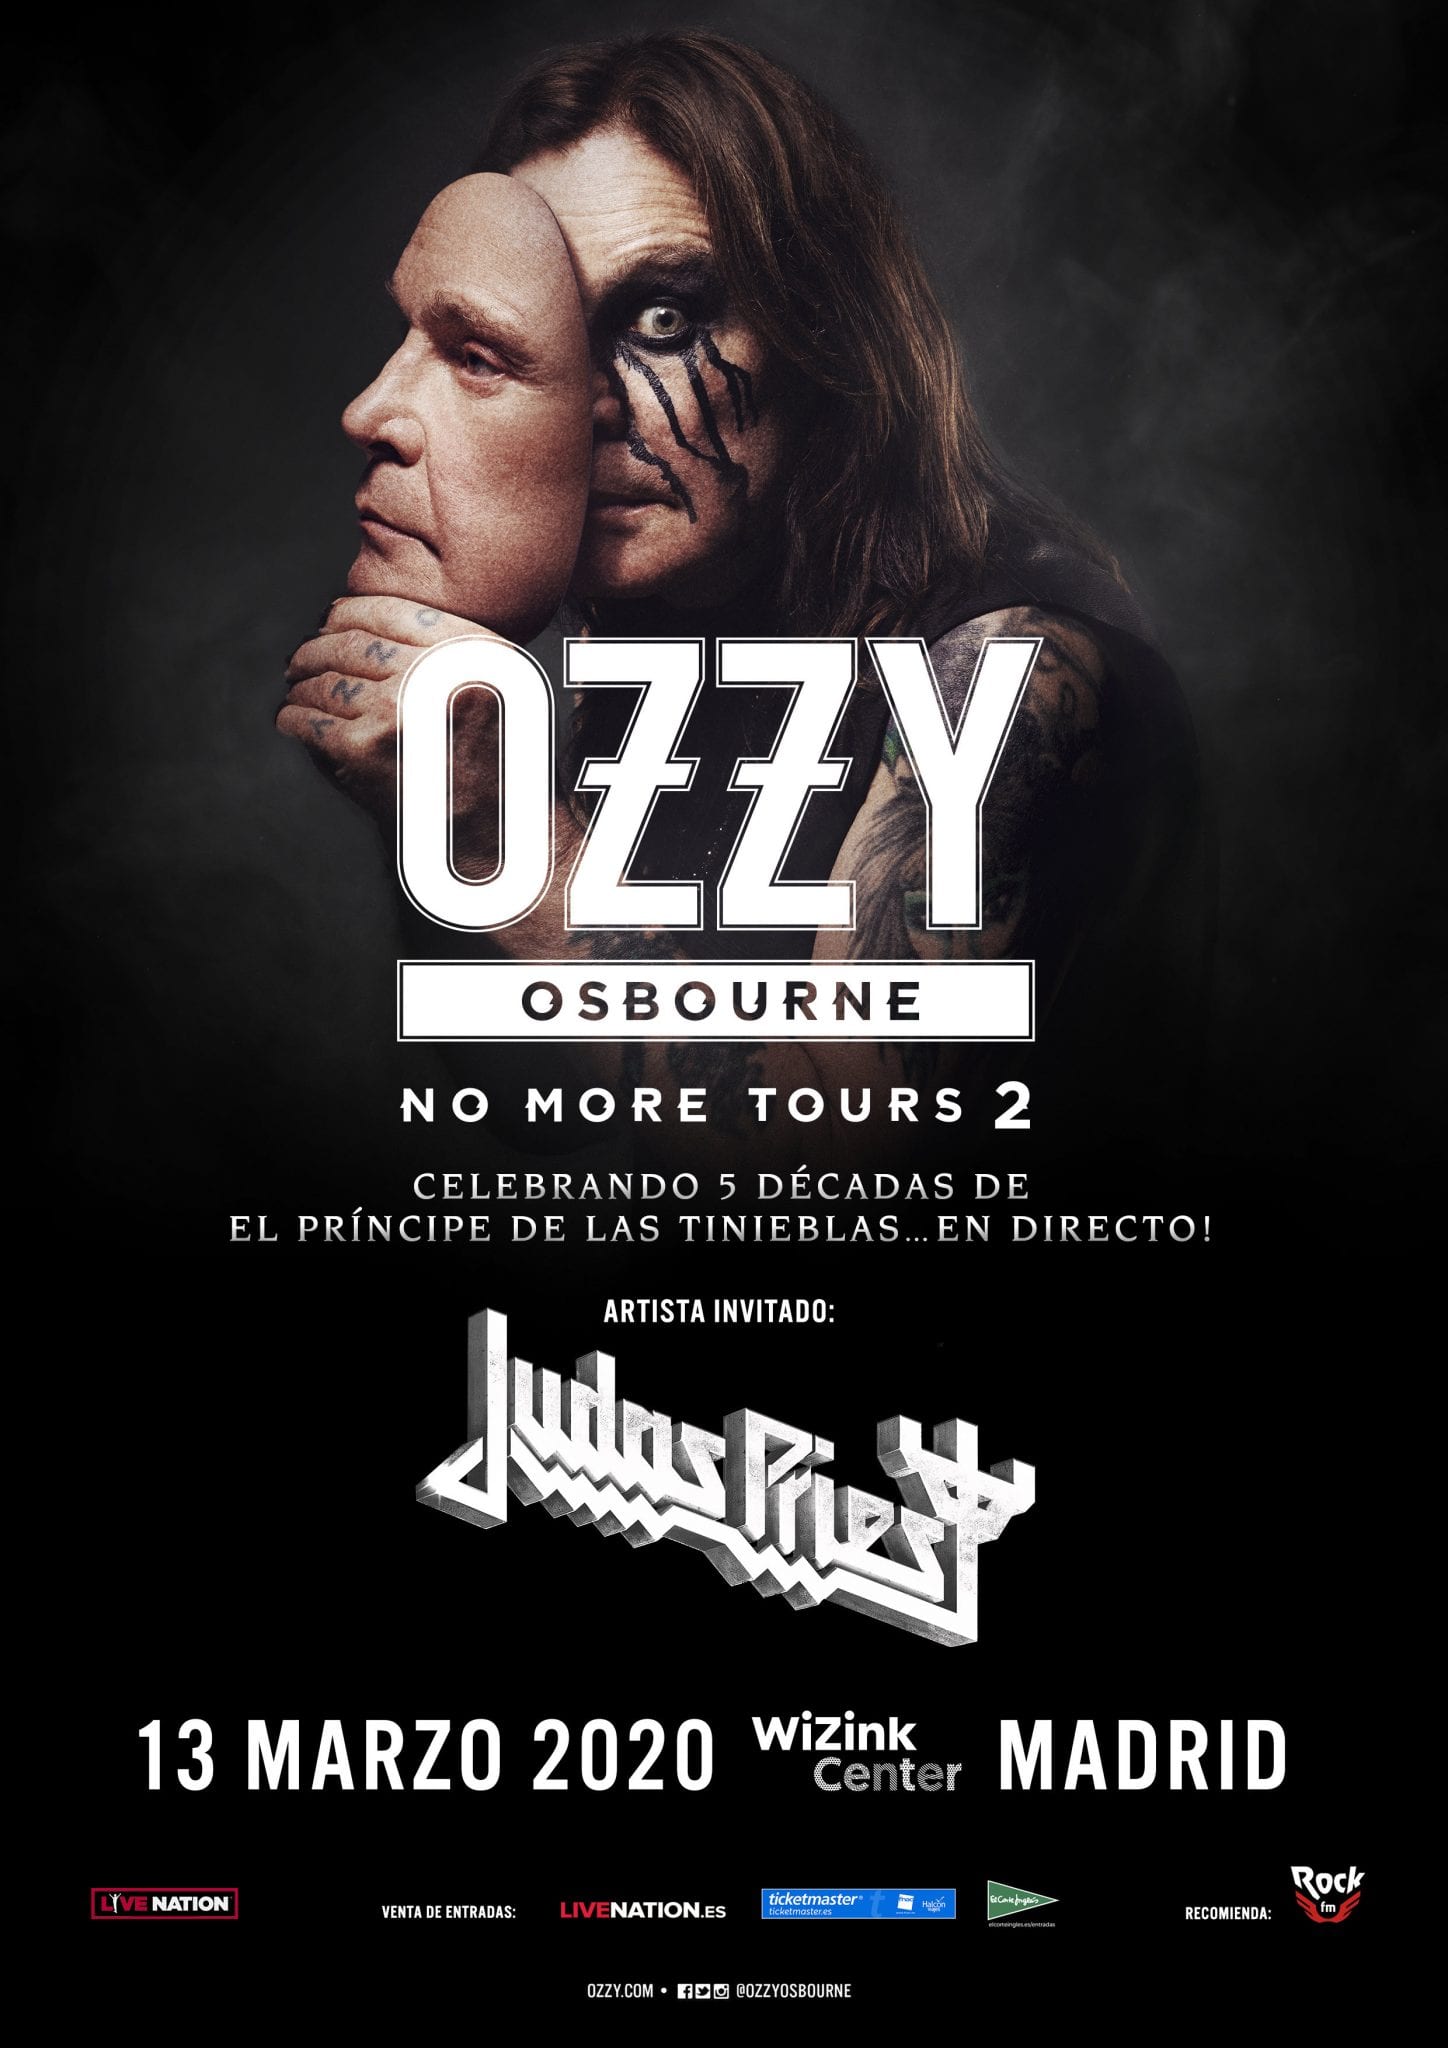 OZZY OSBORNE anuncia las fechas reprogramadas de su gira NO MORE TOURS 2